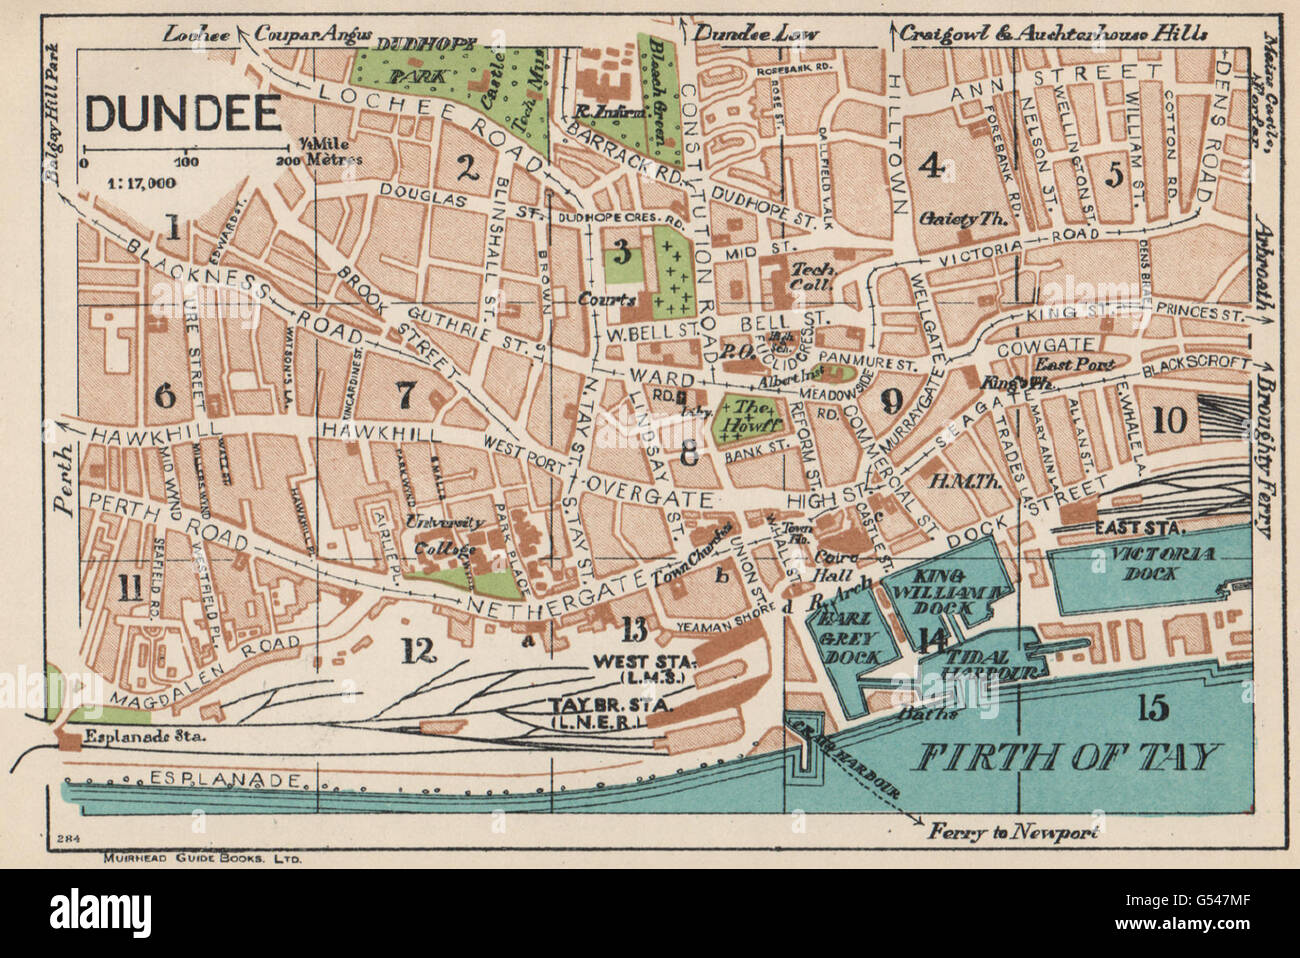 Dundee Mapa De Ciudad Vintage Plan Escocia 1932 G547mf 